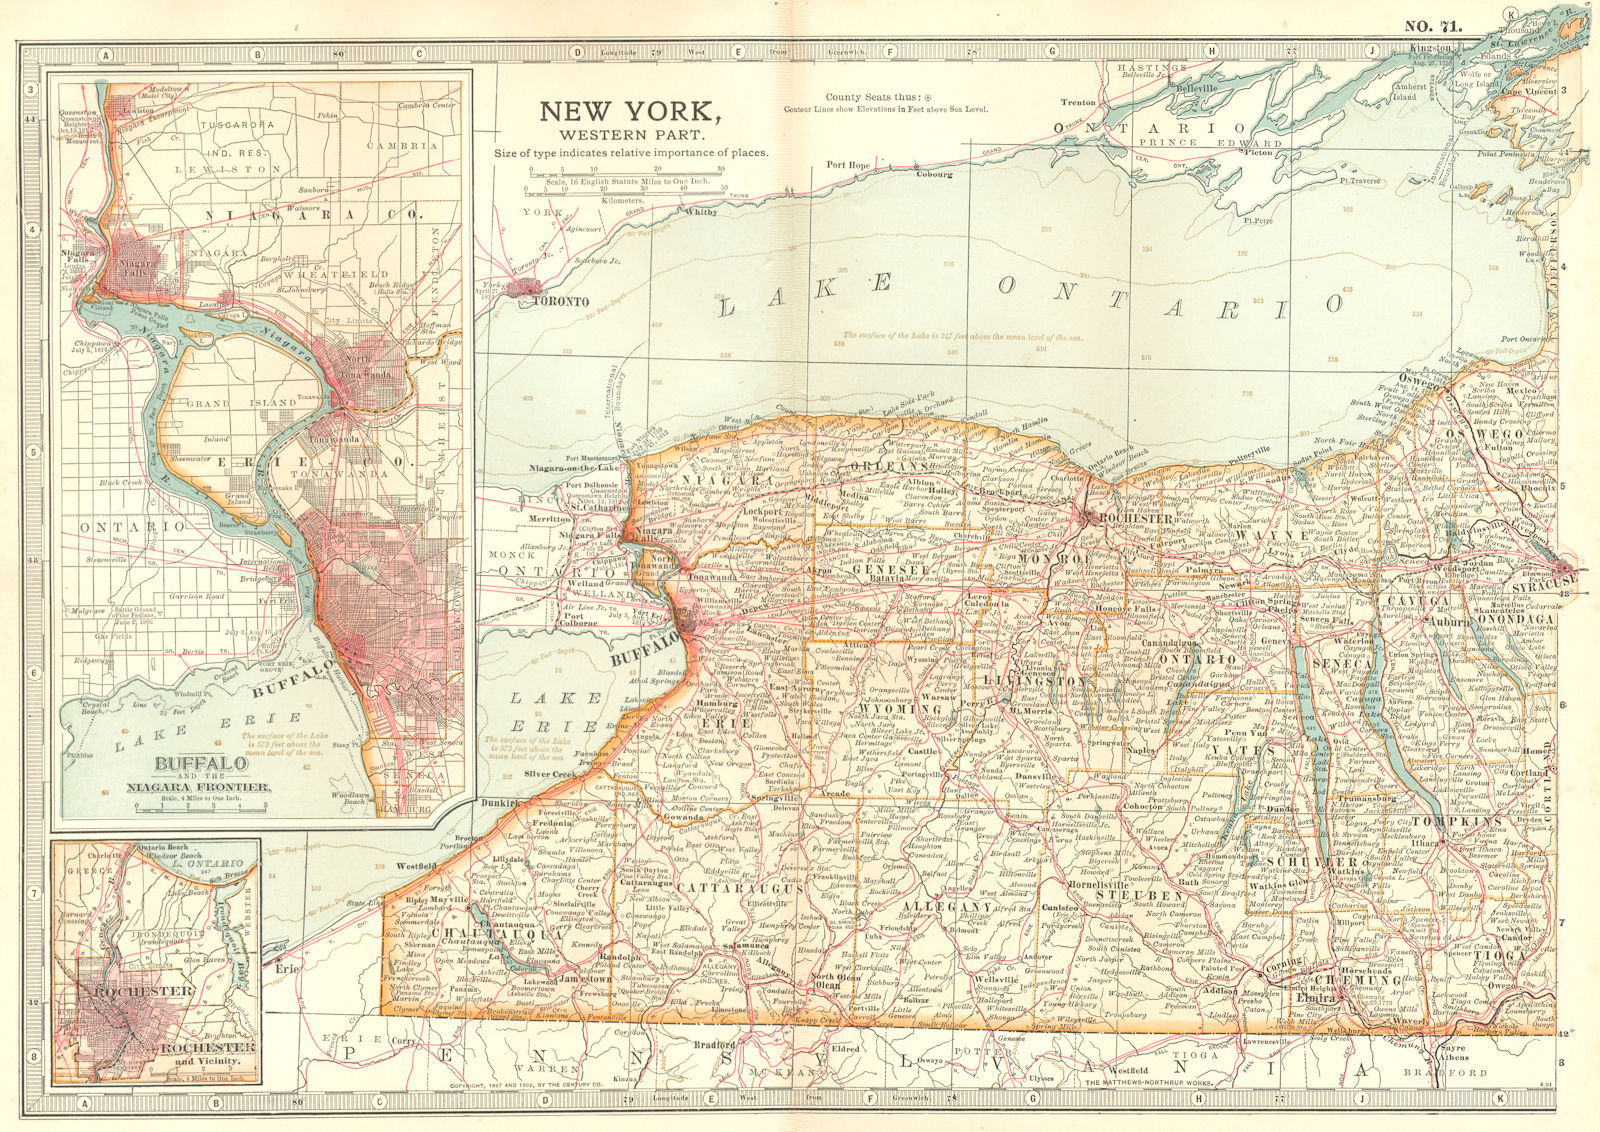 NEW YORK STATE WEST.Buffalo Niagara Rochester.1812-14 1756-59 battles 1903 map